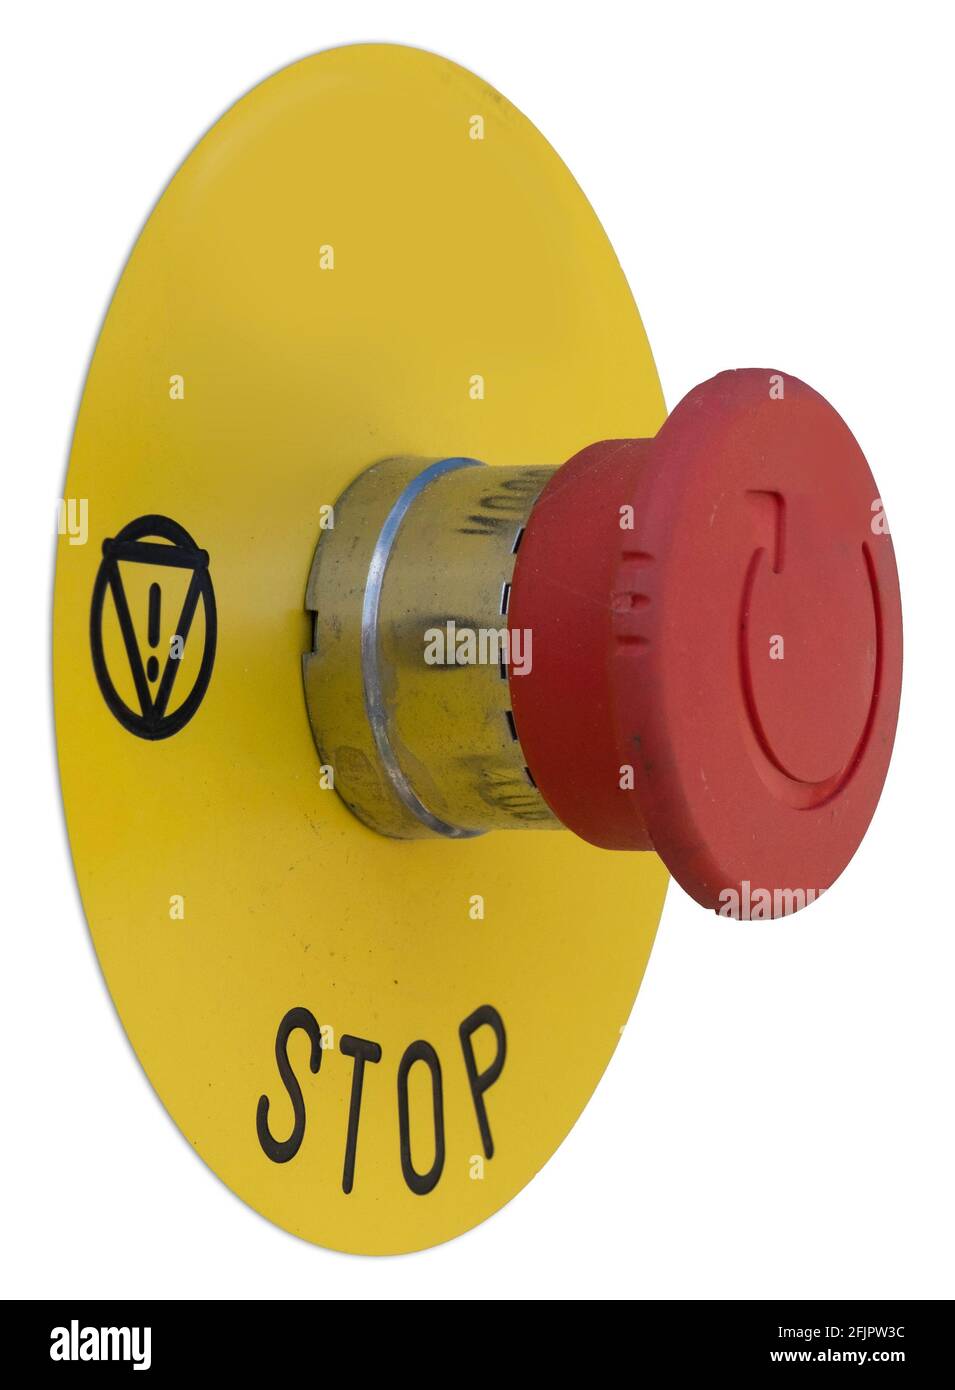 Roter Not-AUS-Taster für Industrie- und Betriebseinrichtungen auf runder gelber Platte mit Ausrufezeichen im Dreieck. Seitenansicht, isoliert auf weiß Stockfoto